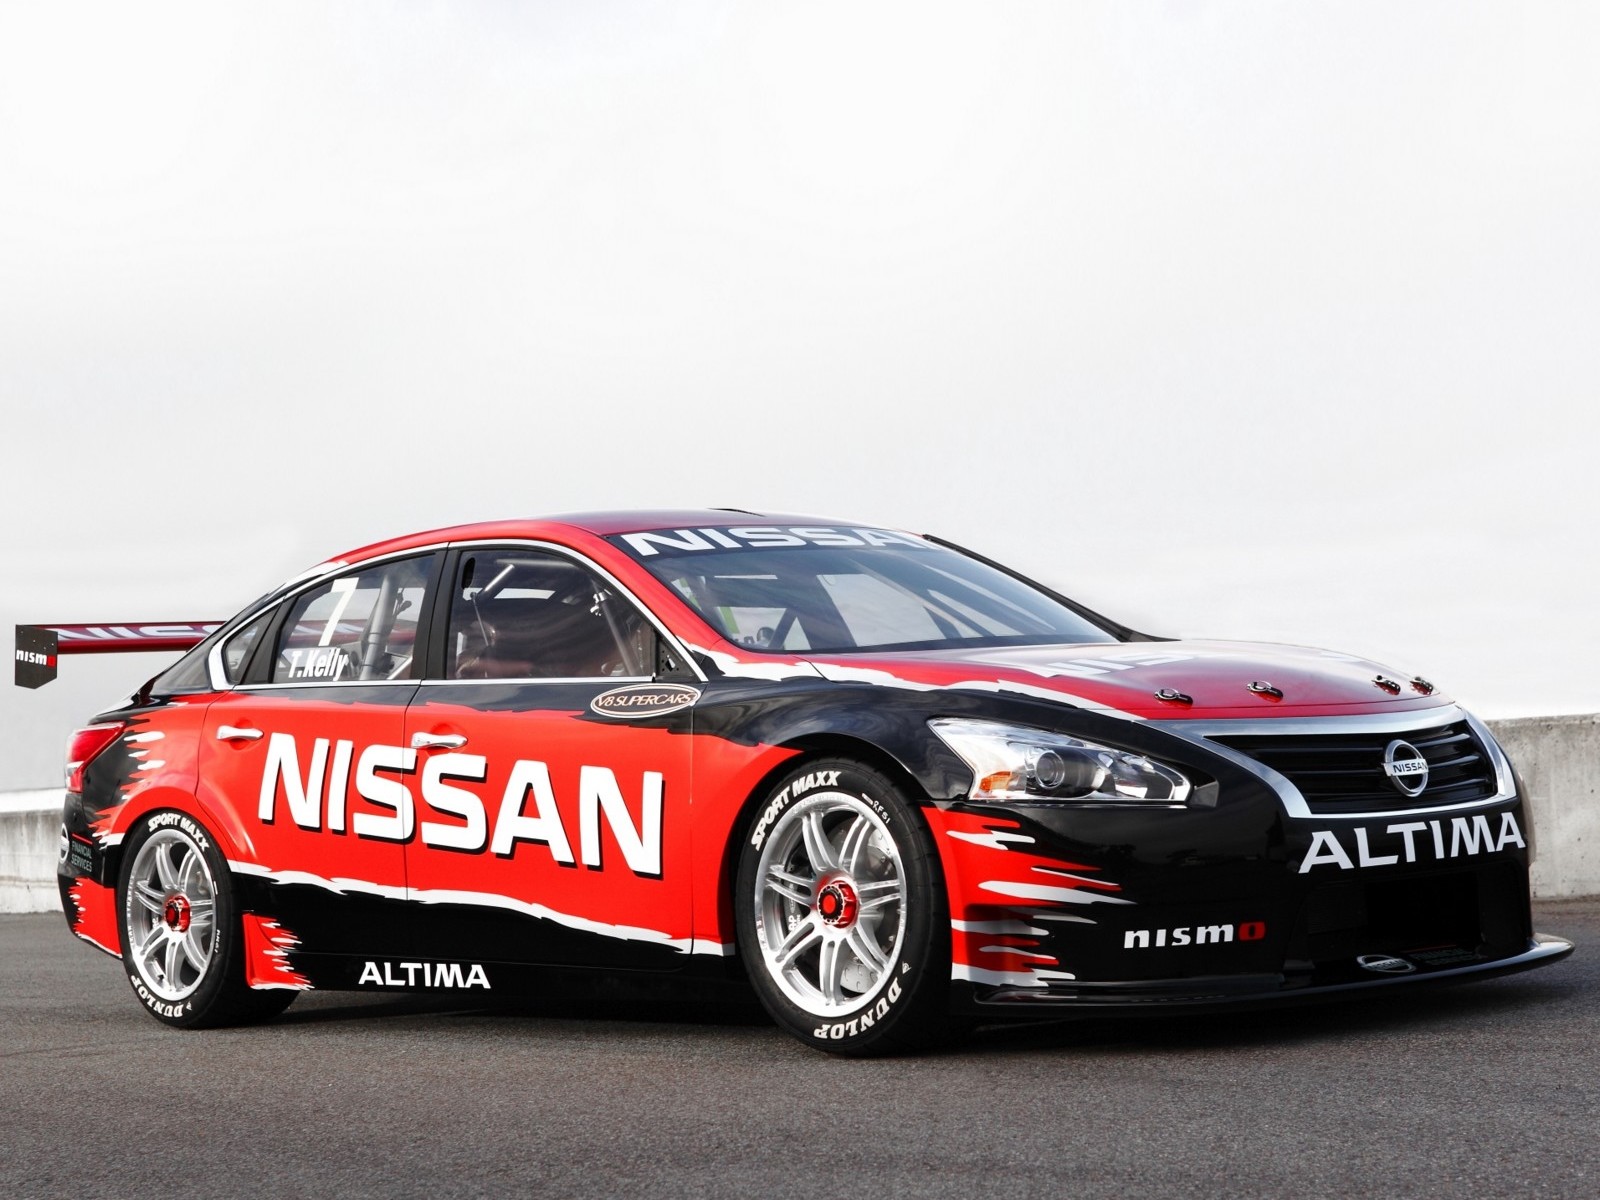 2012, Nissan, Altima, V 8, Supercar, L33, Race, Racing Wallpaper